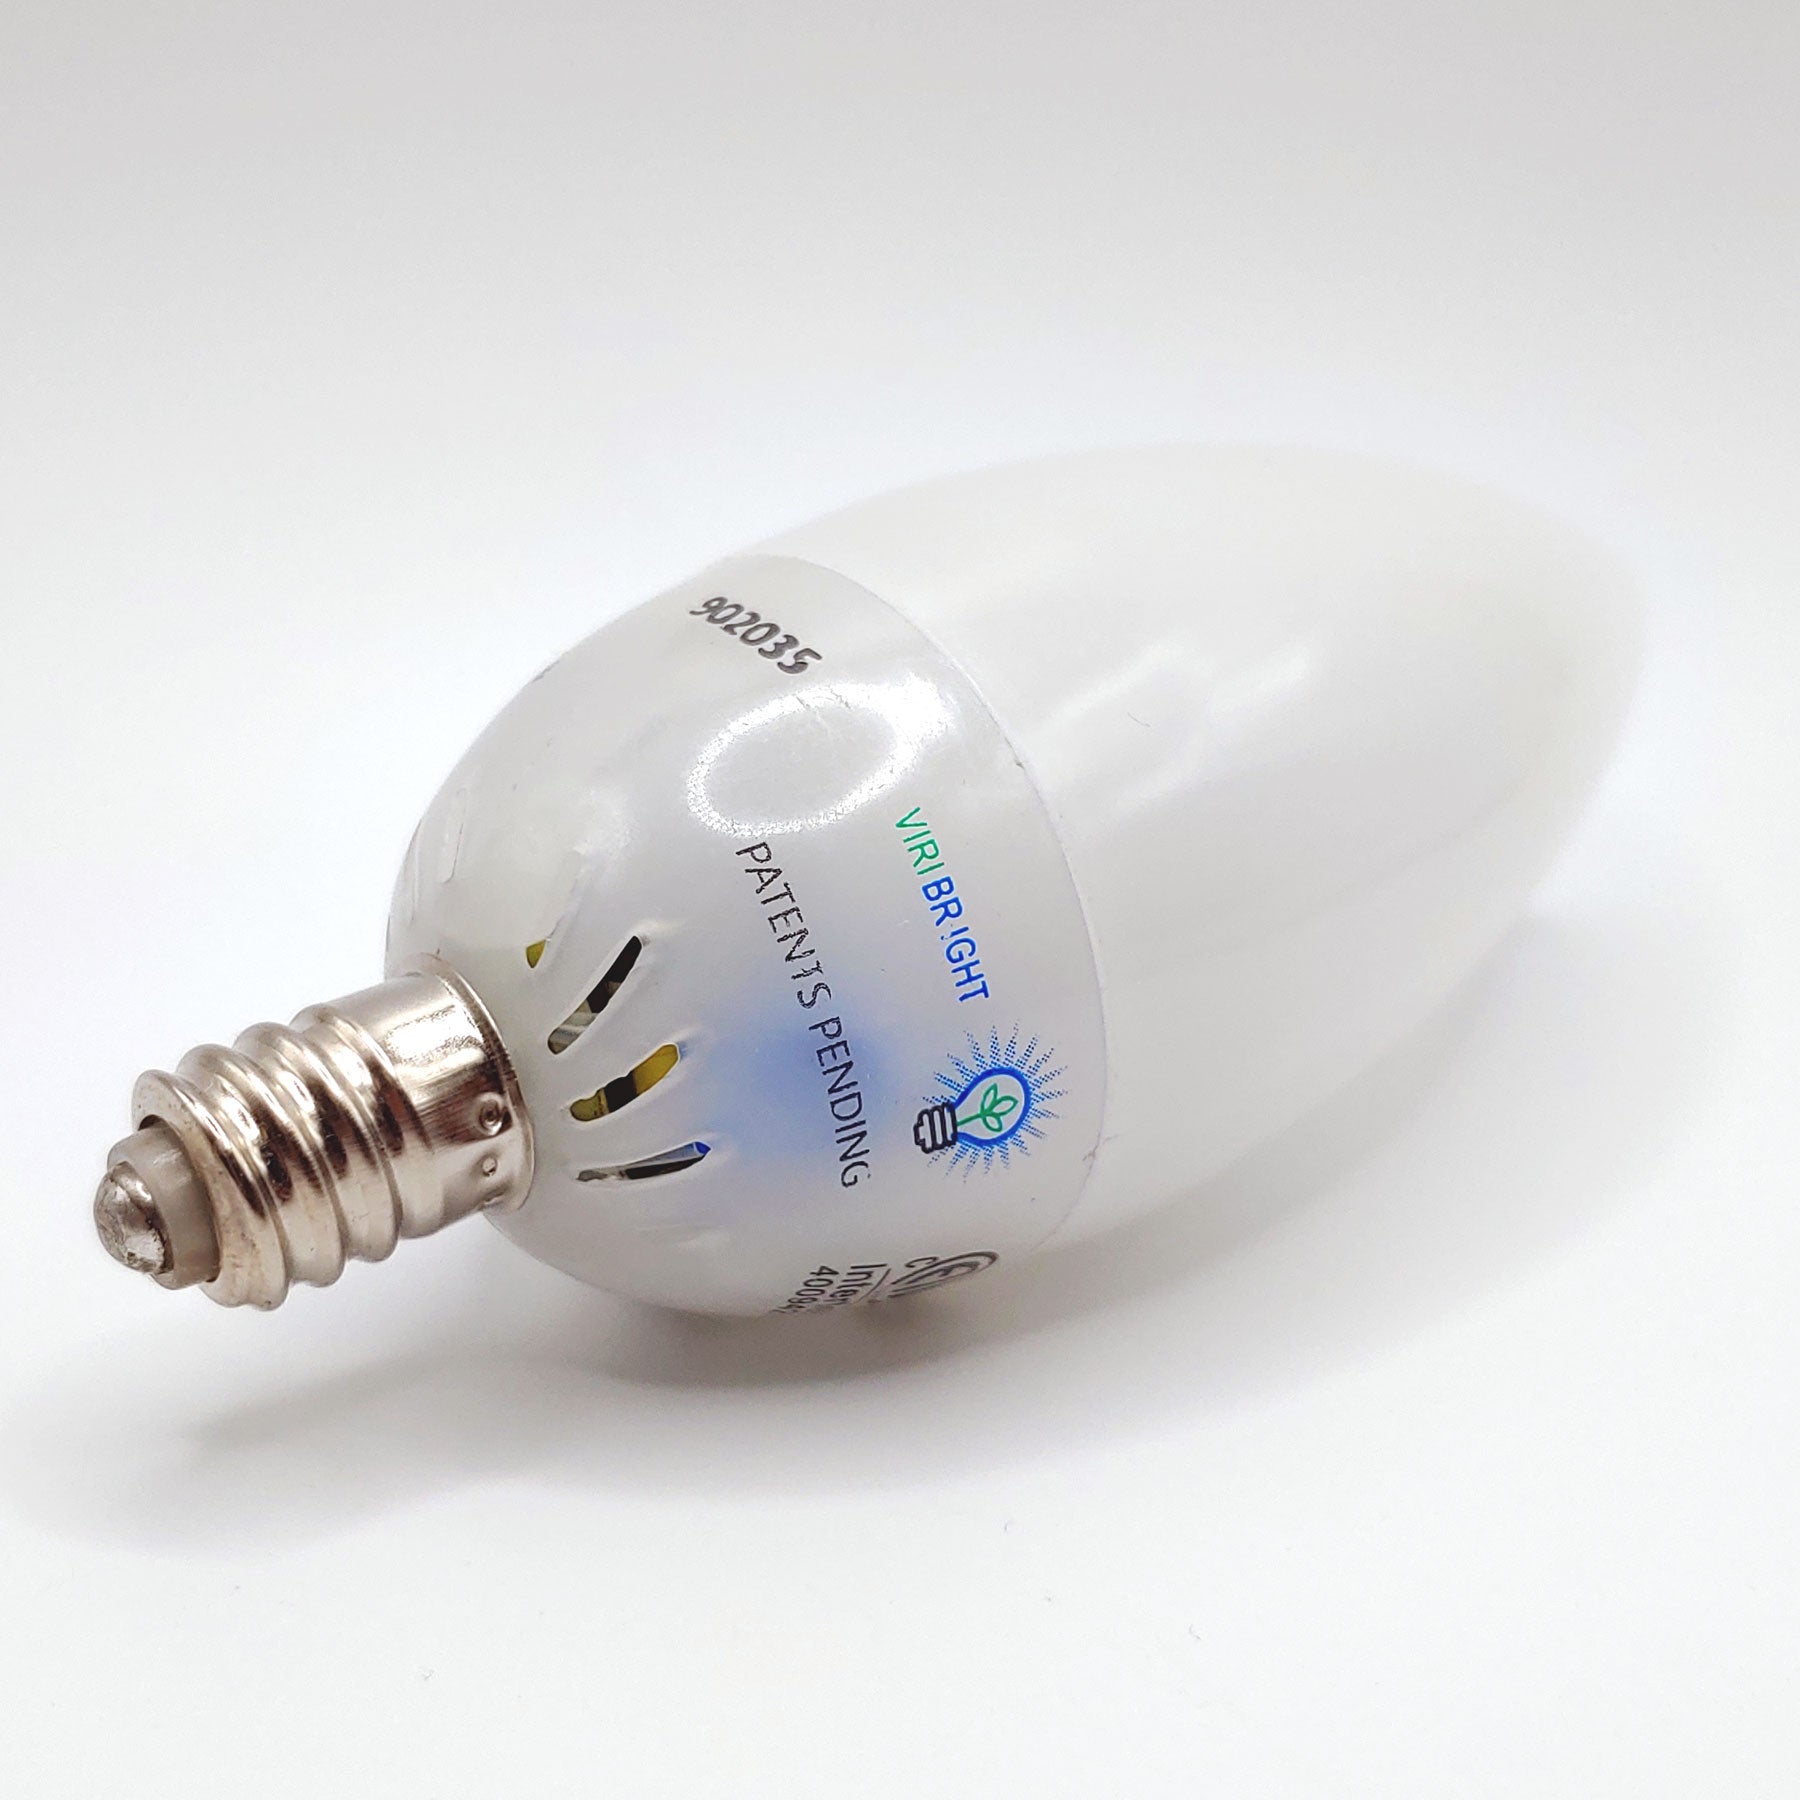 Chandelier 25-Watt Equivalent B10 E12 Frosted LED Light Bulb